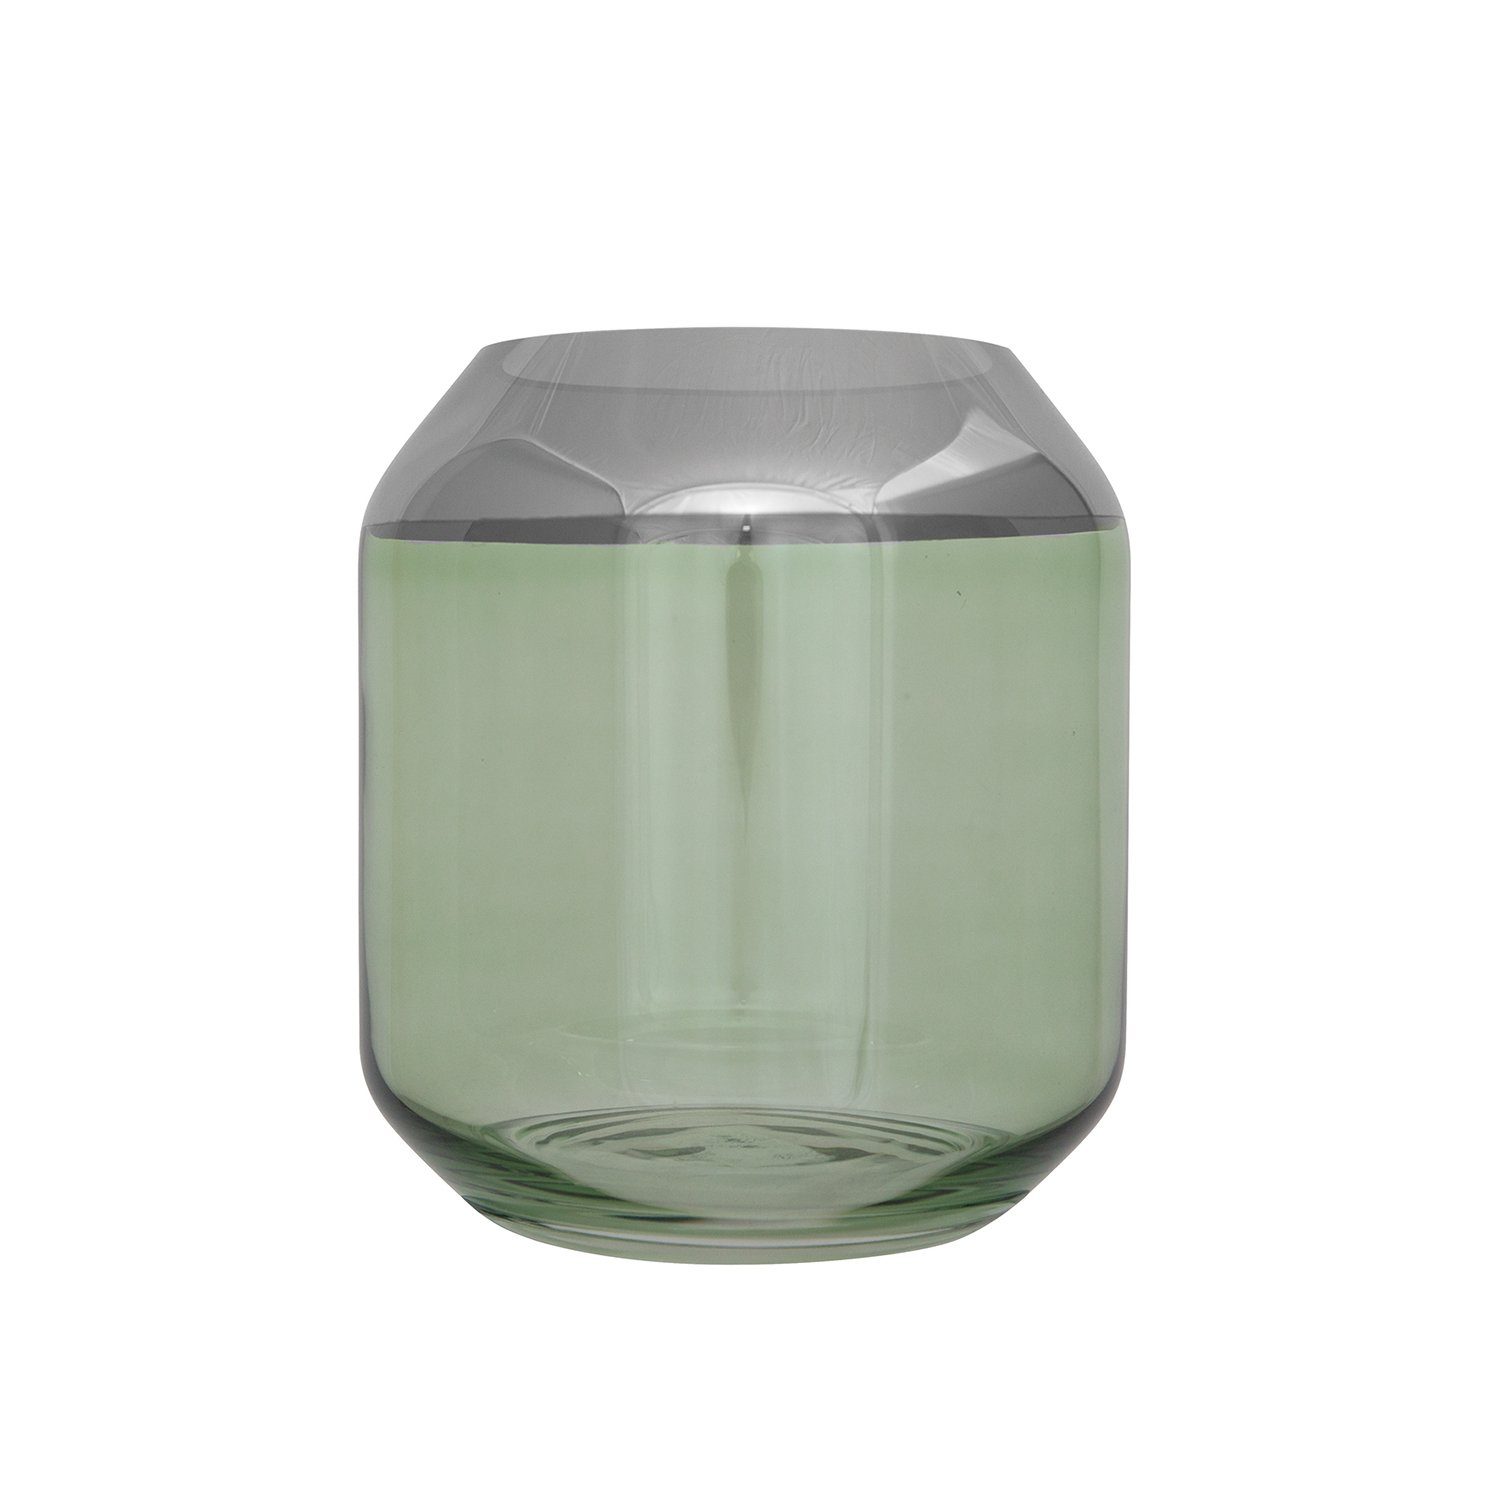 Fink Teelichthalter Teelichthalter / Vase SMILLA - grün - Glas - H.20,6cm x Ø 18,5cm, mundgeblasen - folierter silberfarbener Rand - Ø Öffnung: 11,5 cm